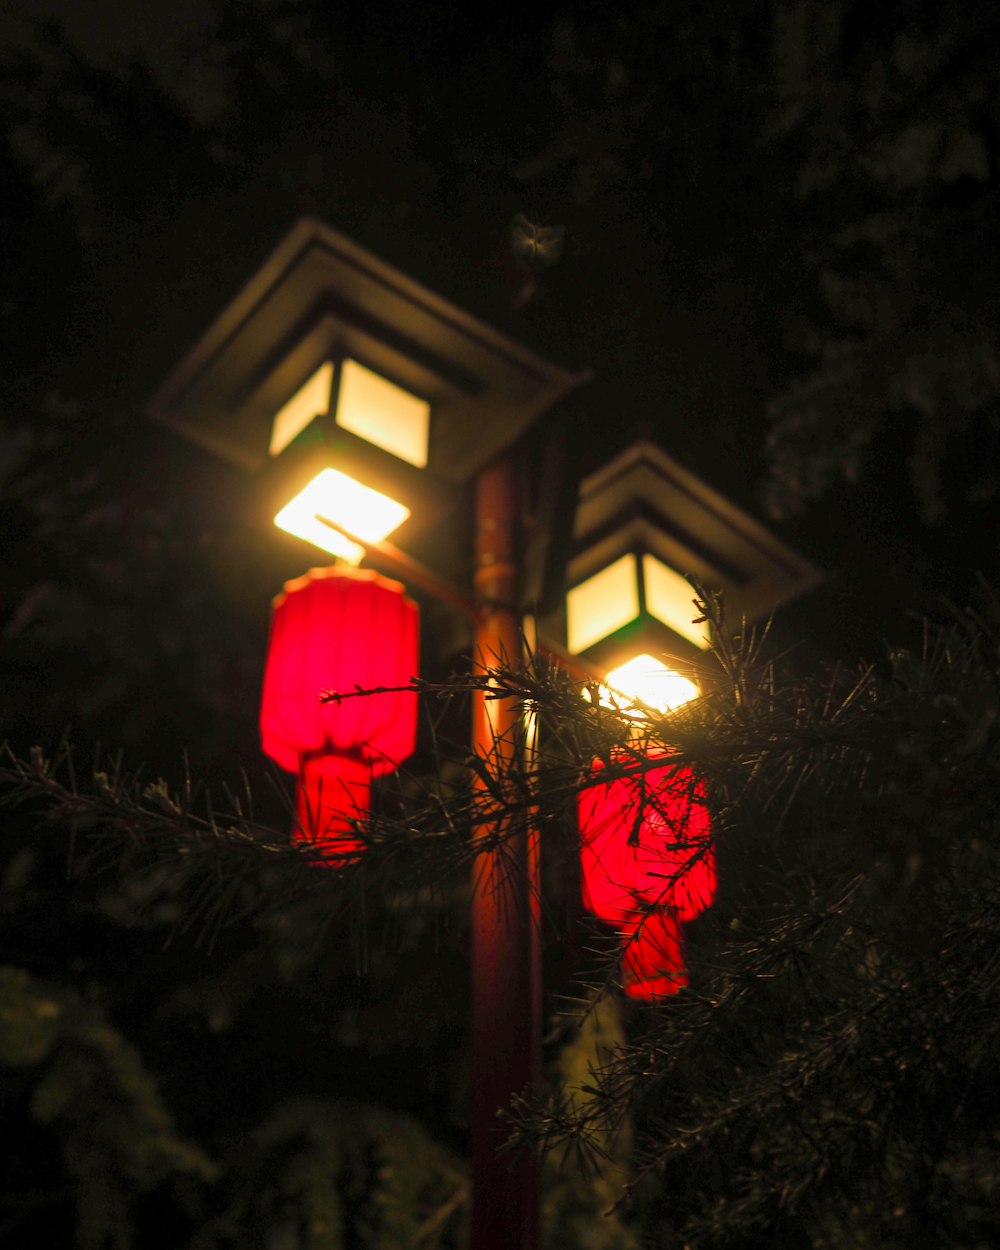 red lantern on tree during nighttime